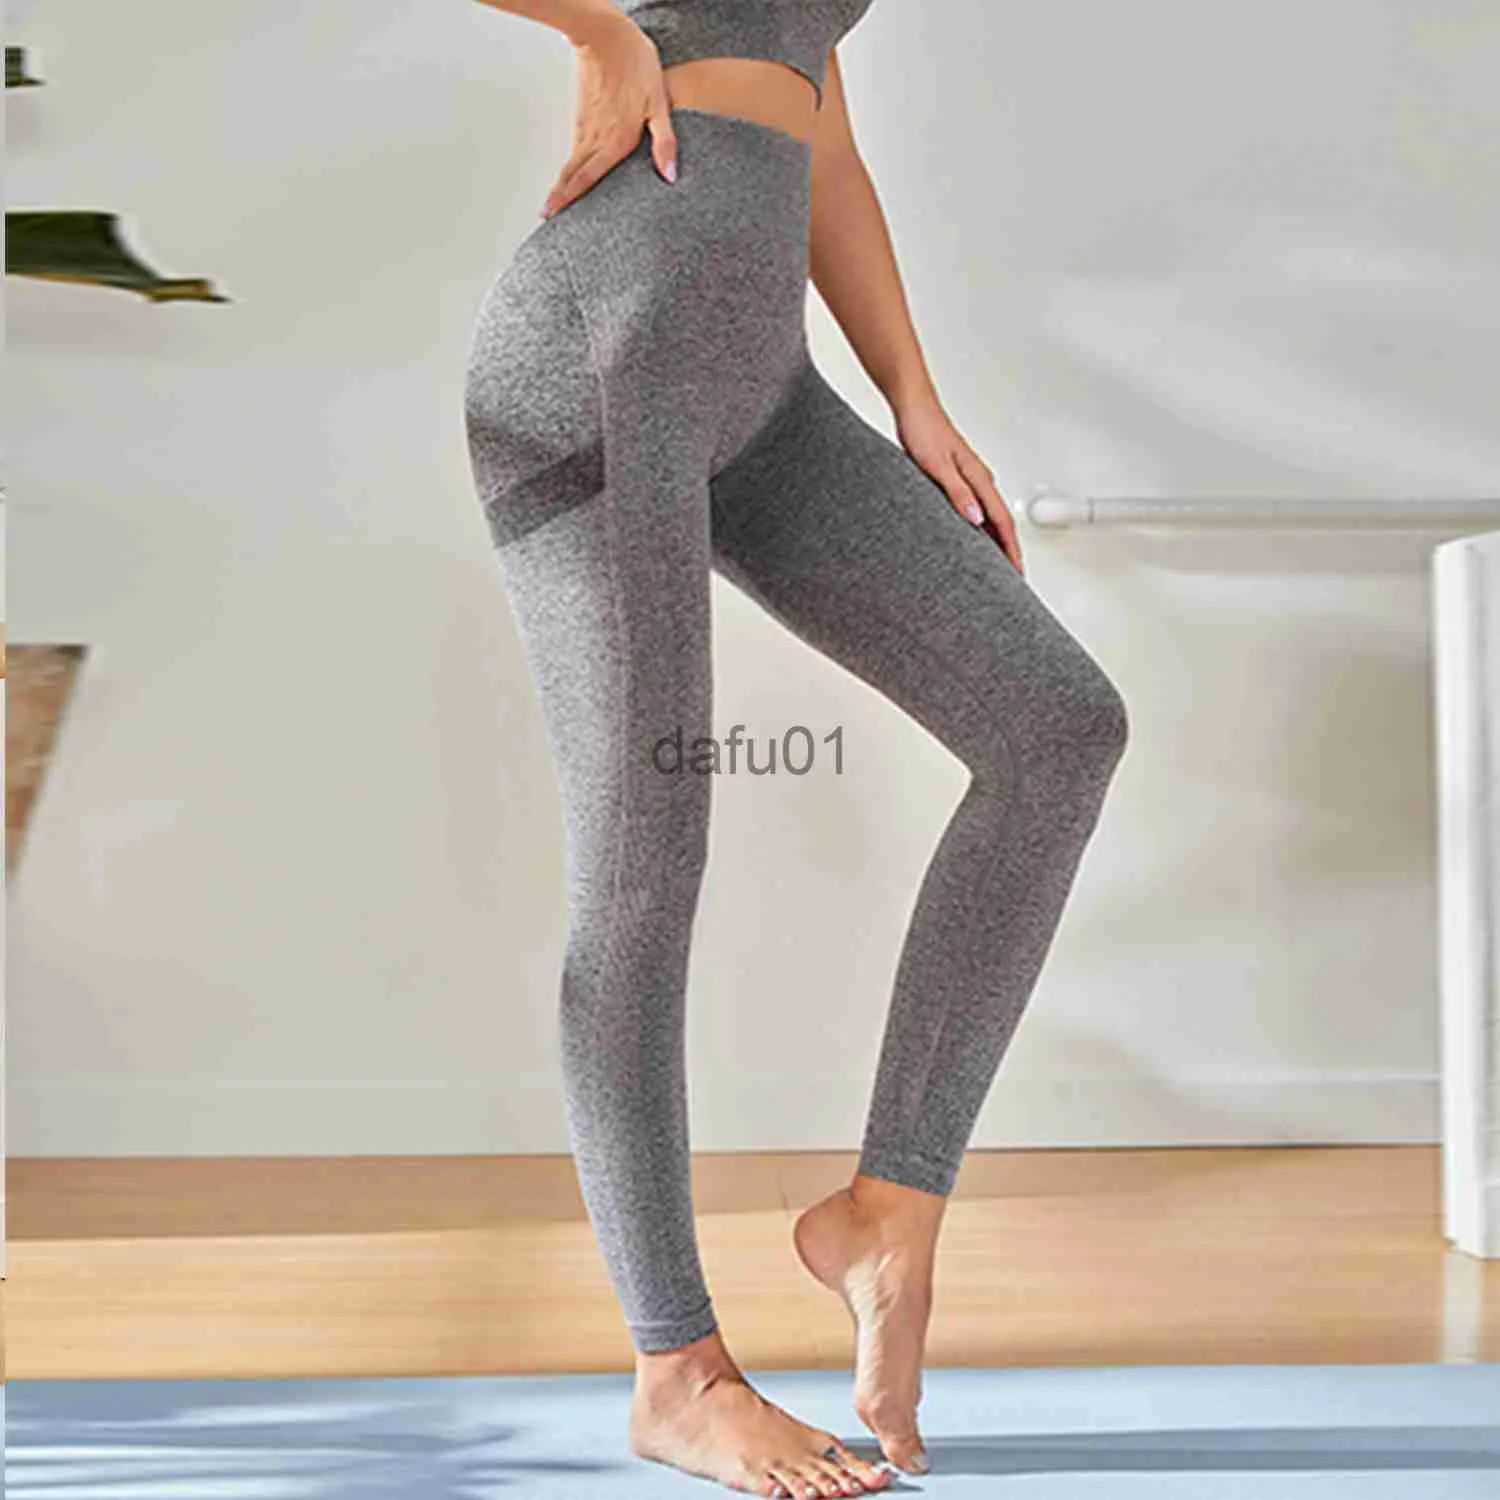 Активные брюки luAB326 штаны для йоги Брюки с высокой талией Высокоэластичные трикотажные быстросохнущие дышащие спортивные брюки для фитнеса для бега для йоги, пожалуйста, проверьте таблицу размеров, чтобы купить